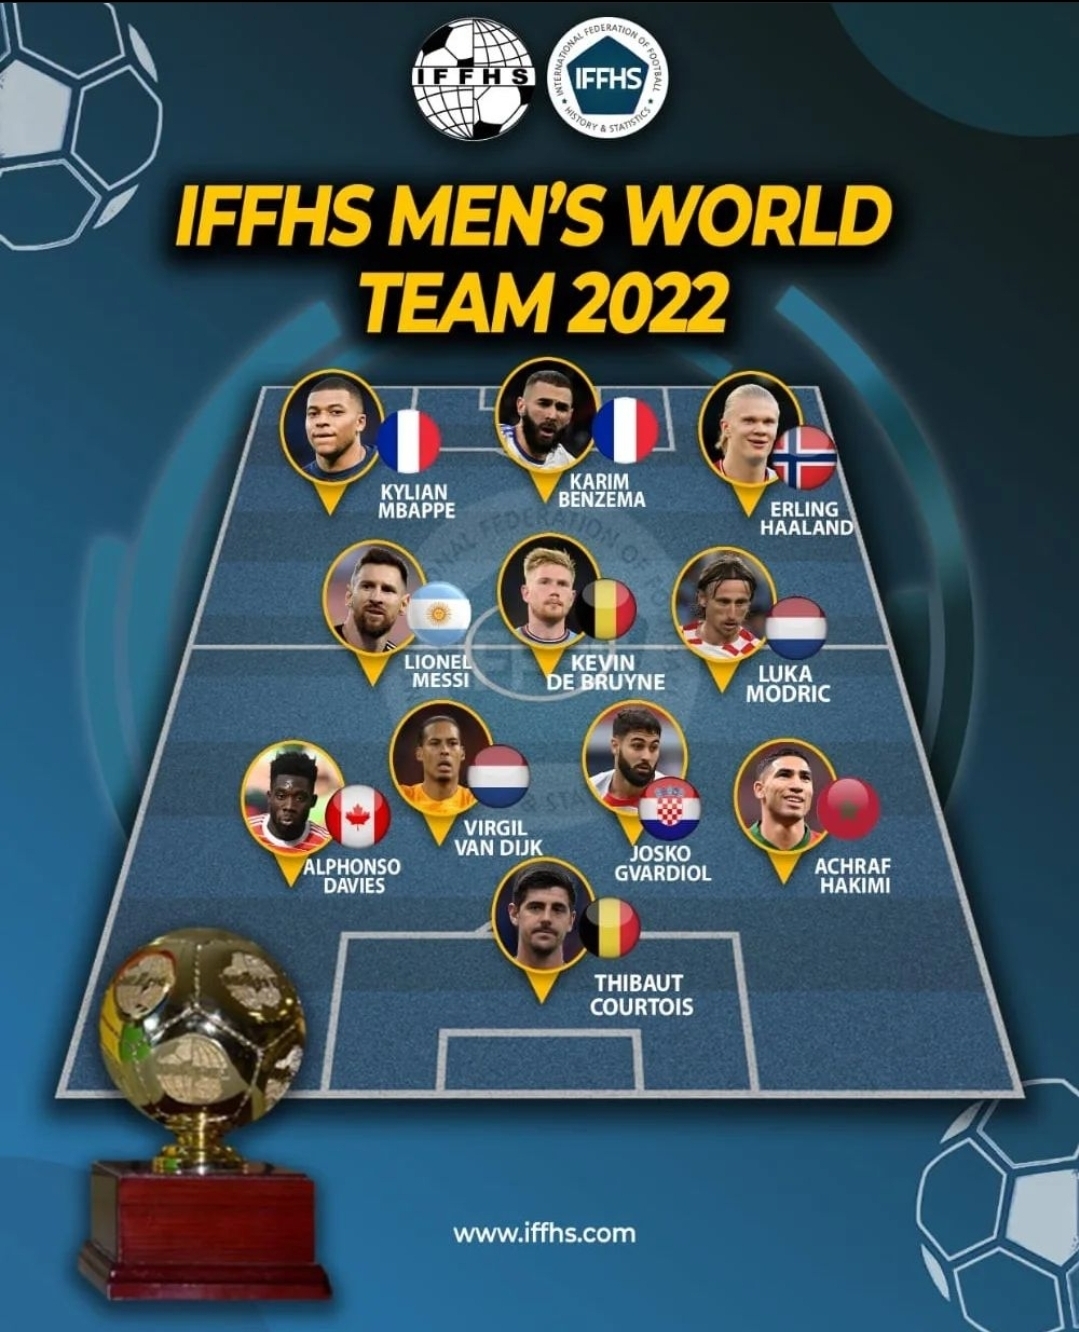 La Iffhs Publica Su Once Ideal Del 2022 Messi Y El Real Madrid